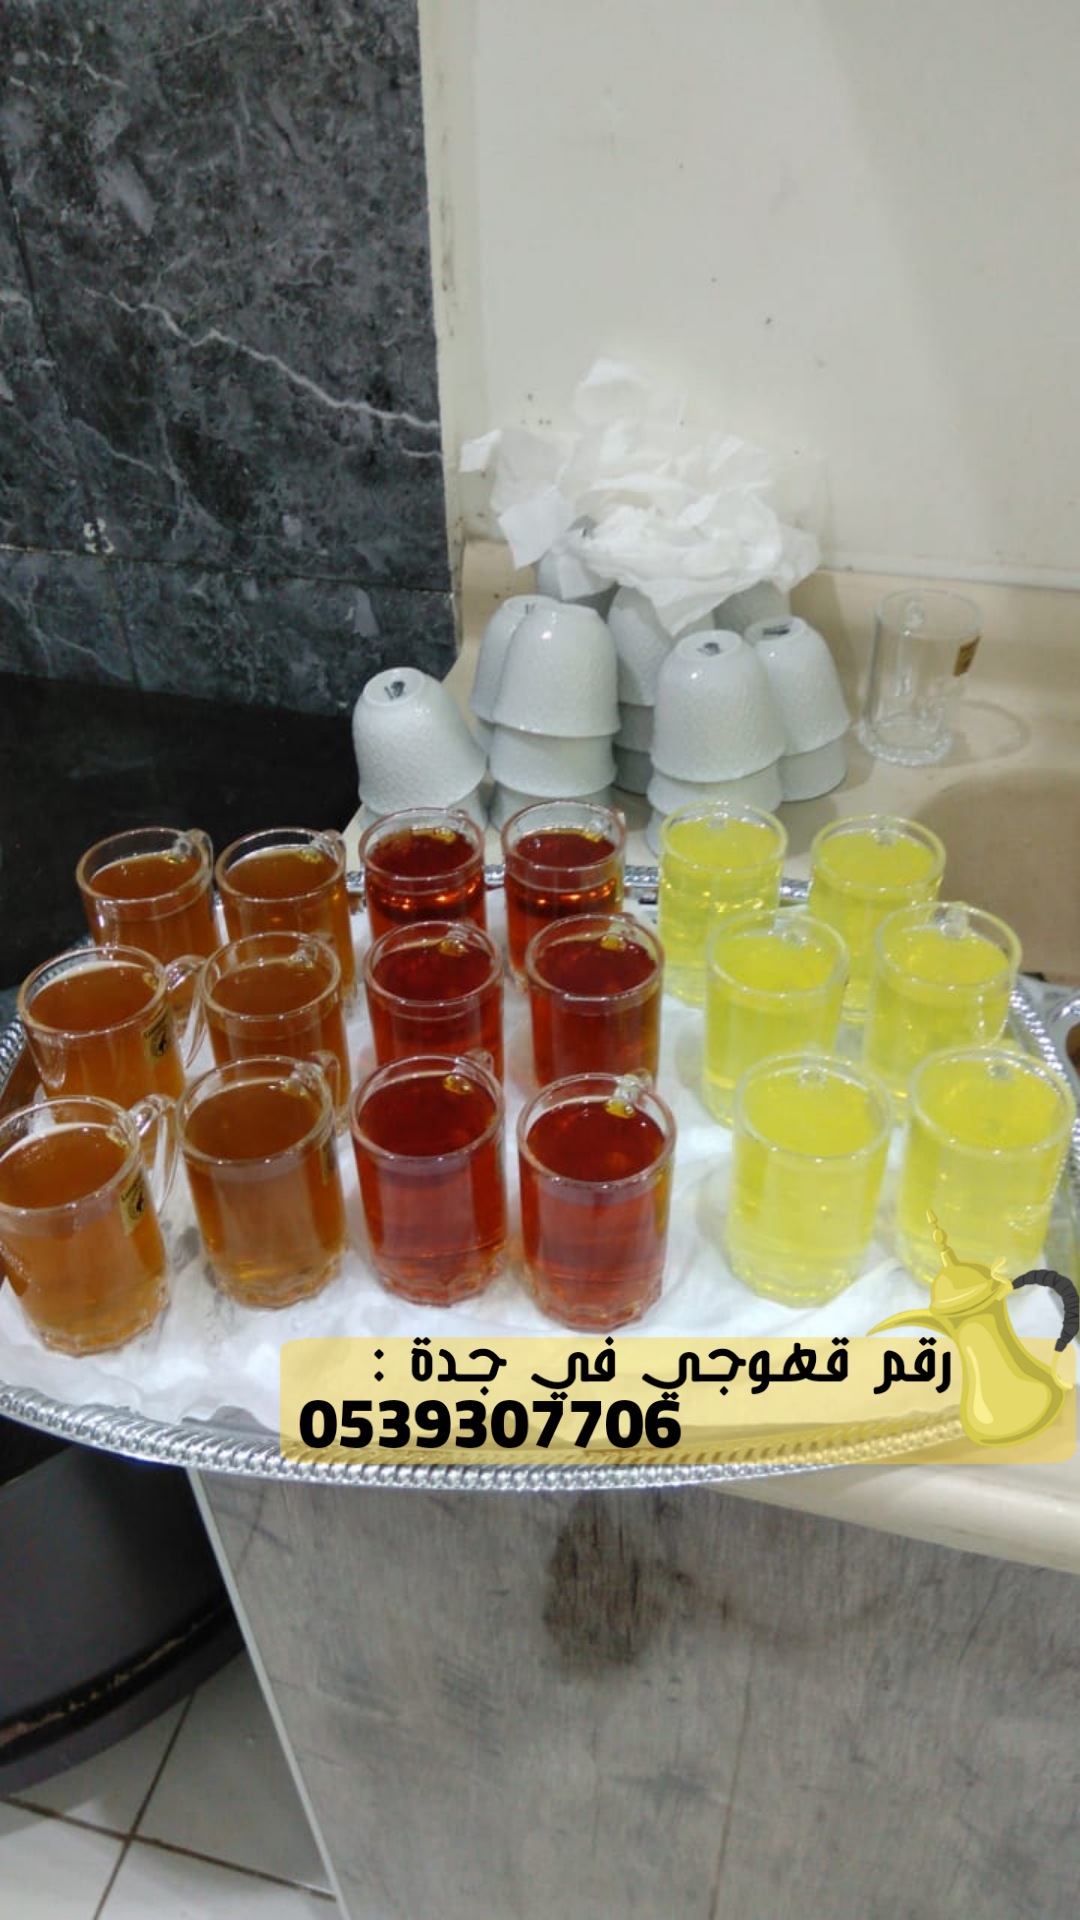 صبابين قهوه في جدة و مباشرين قهوة,0539307706